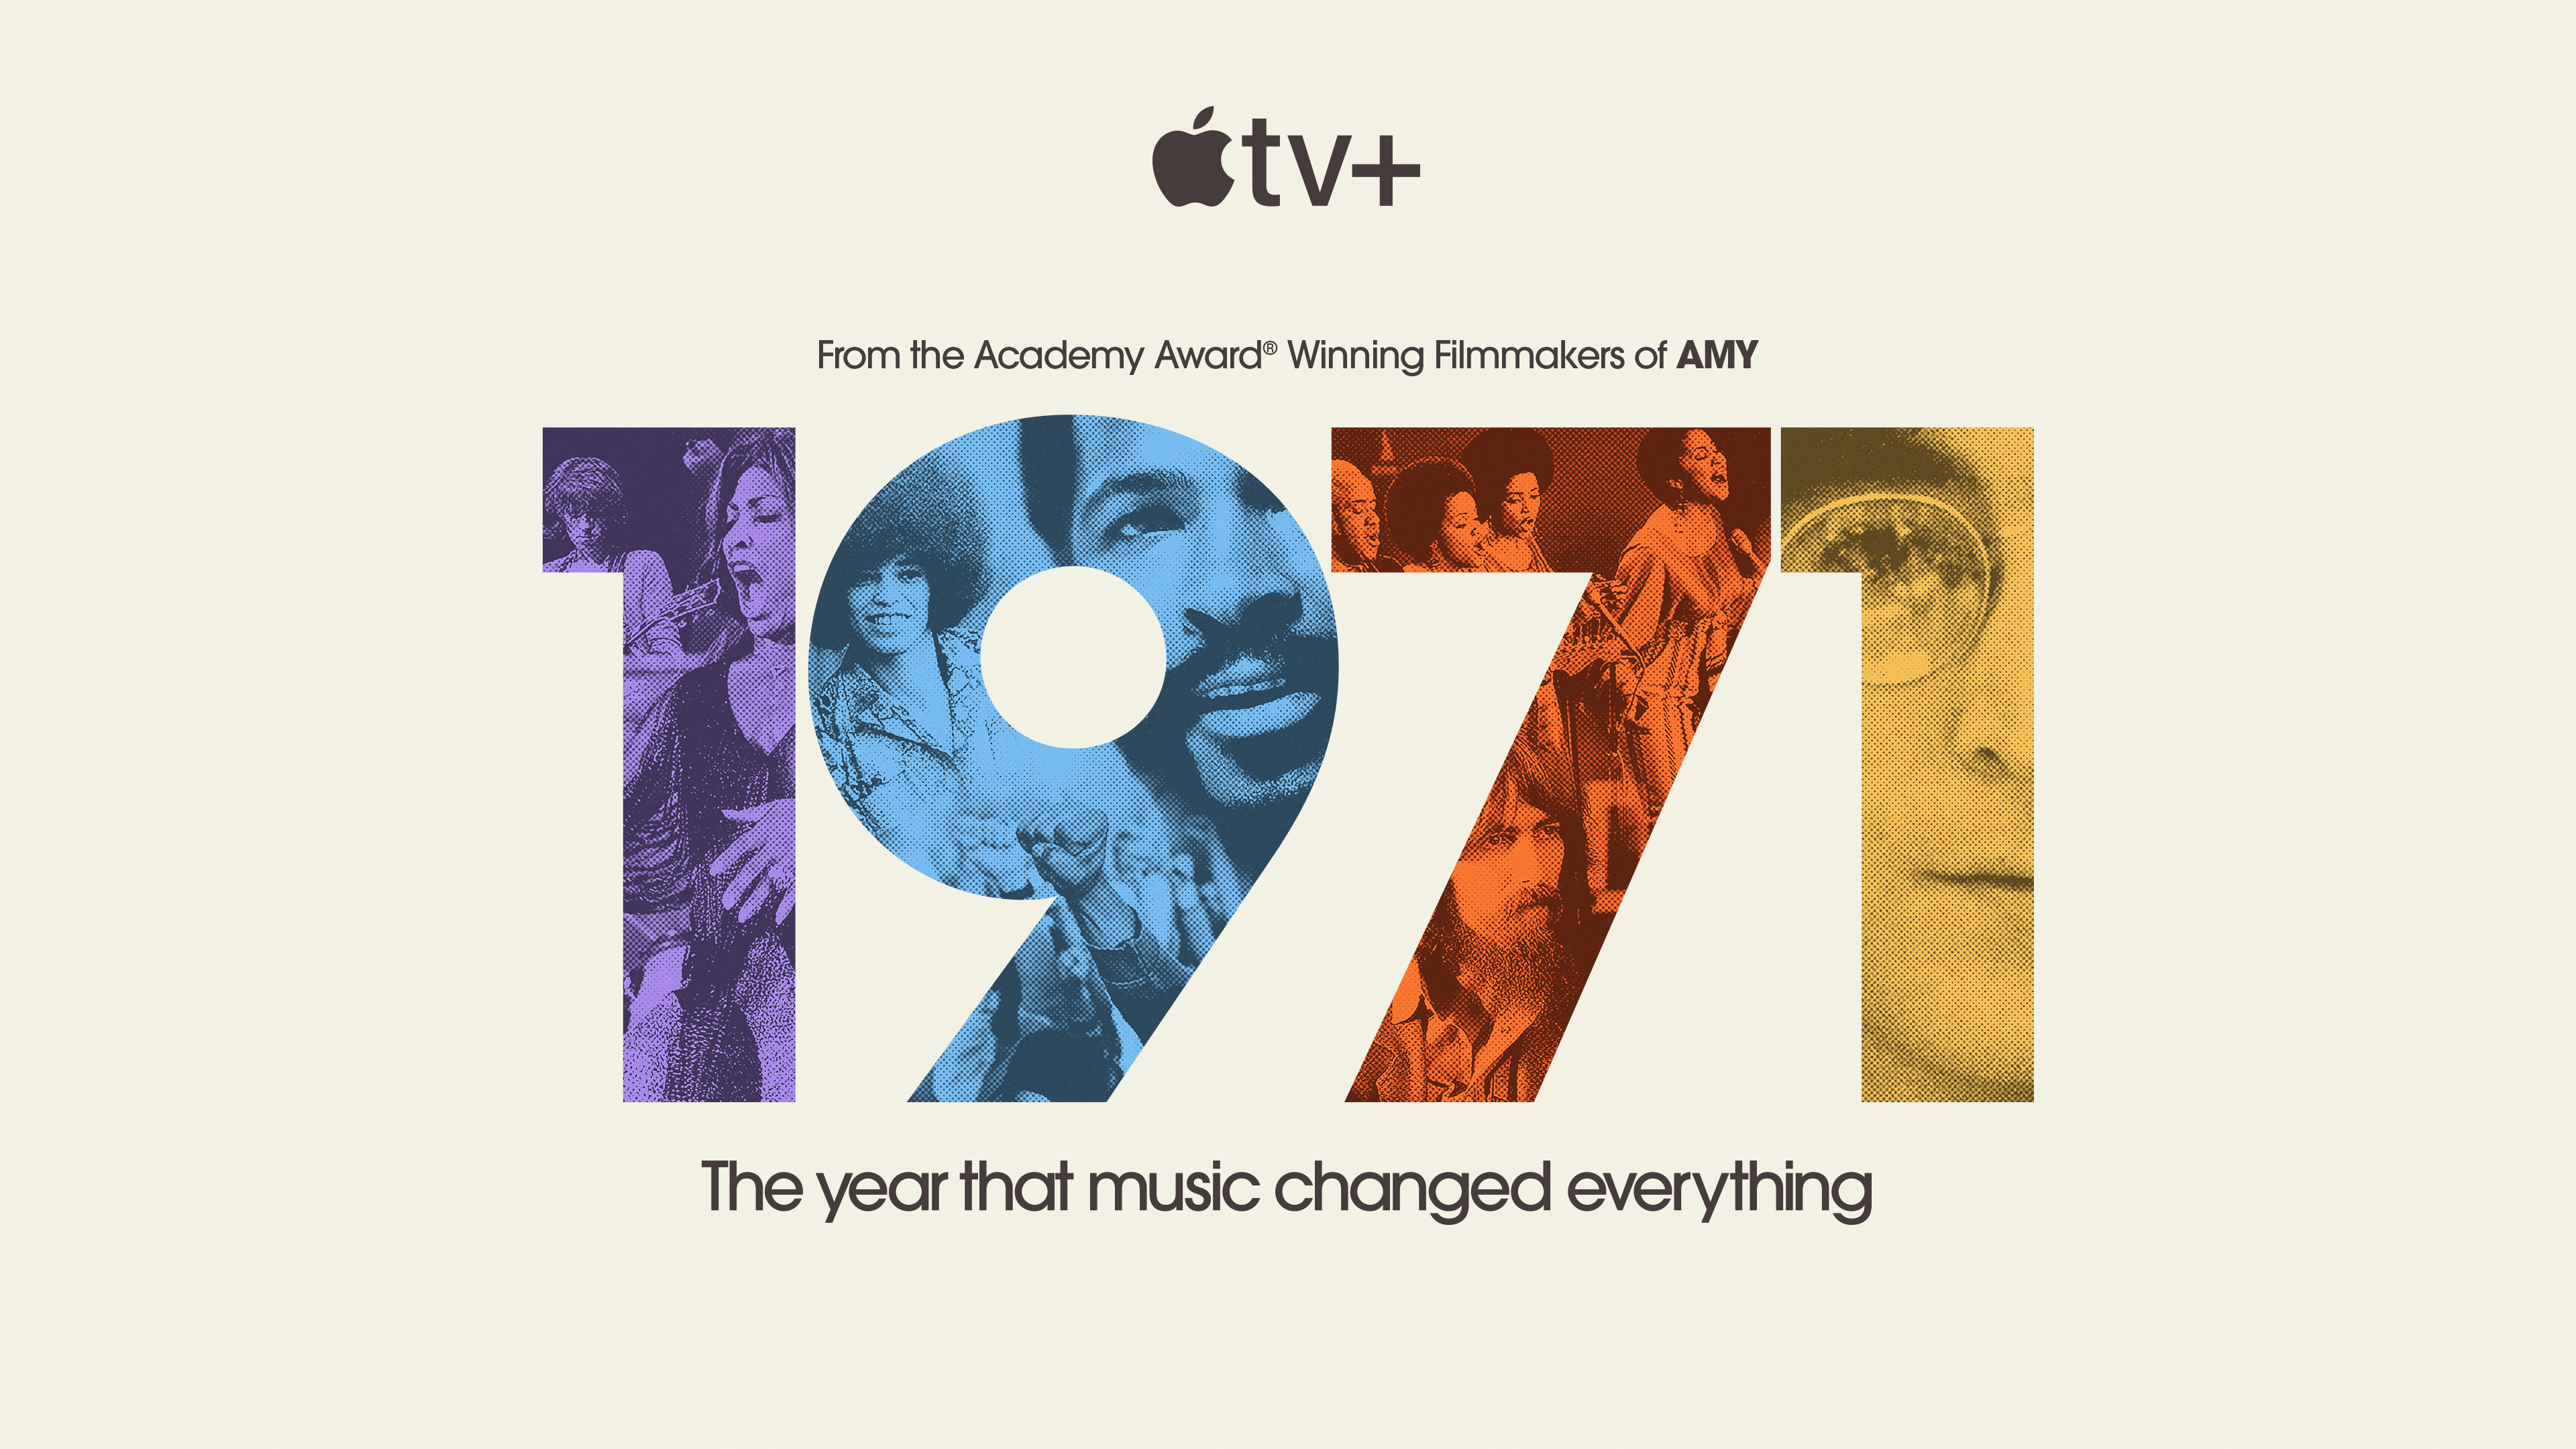 1971: ¿El año del gran cambio musical y social?